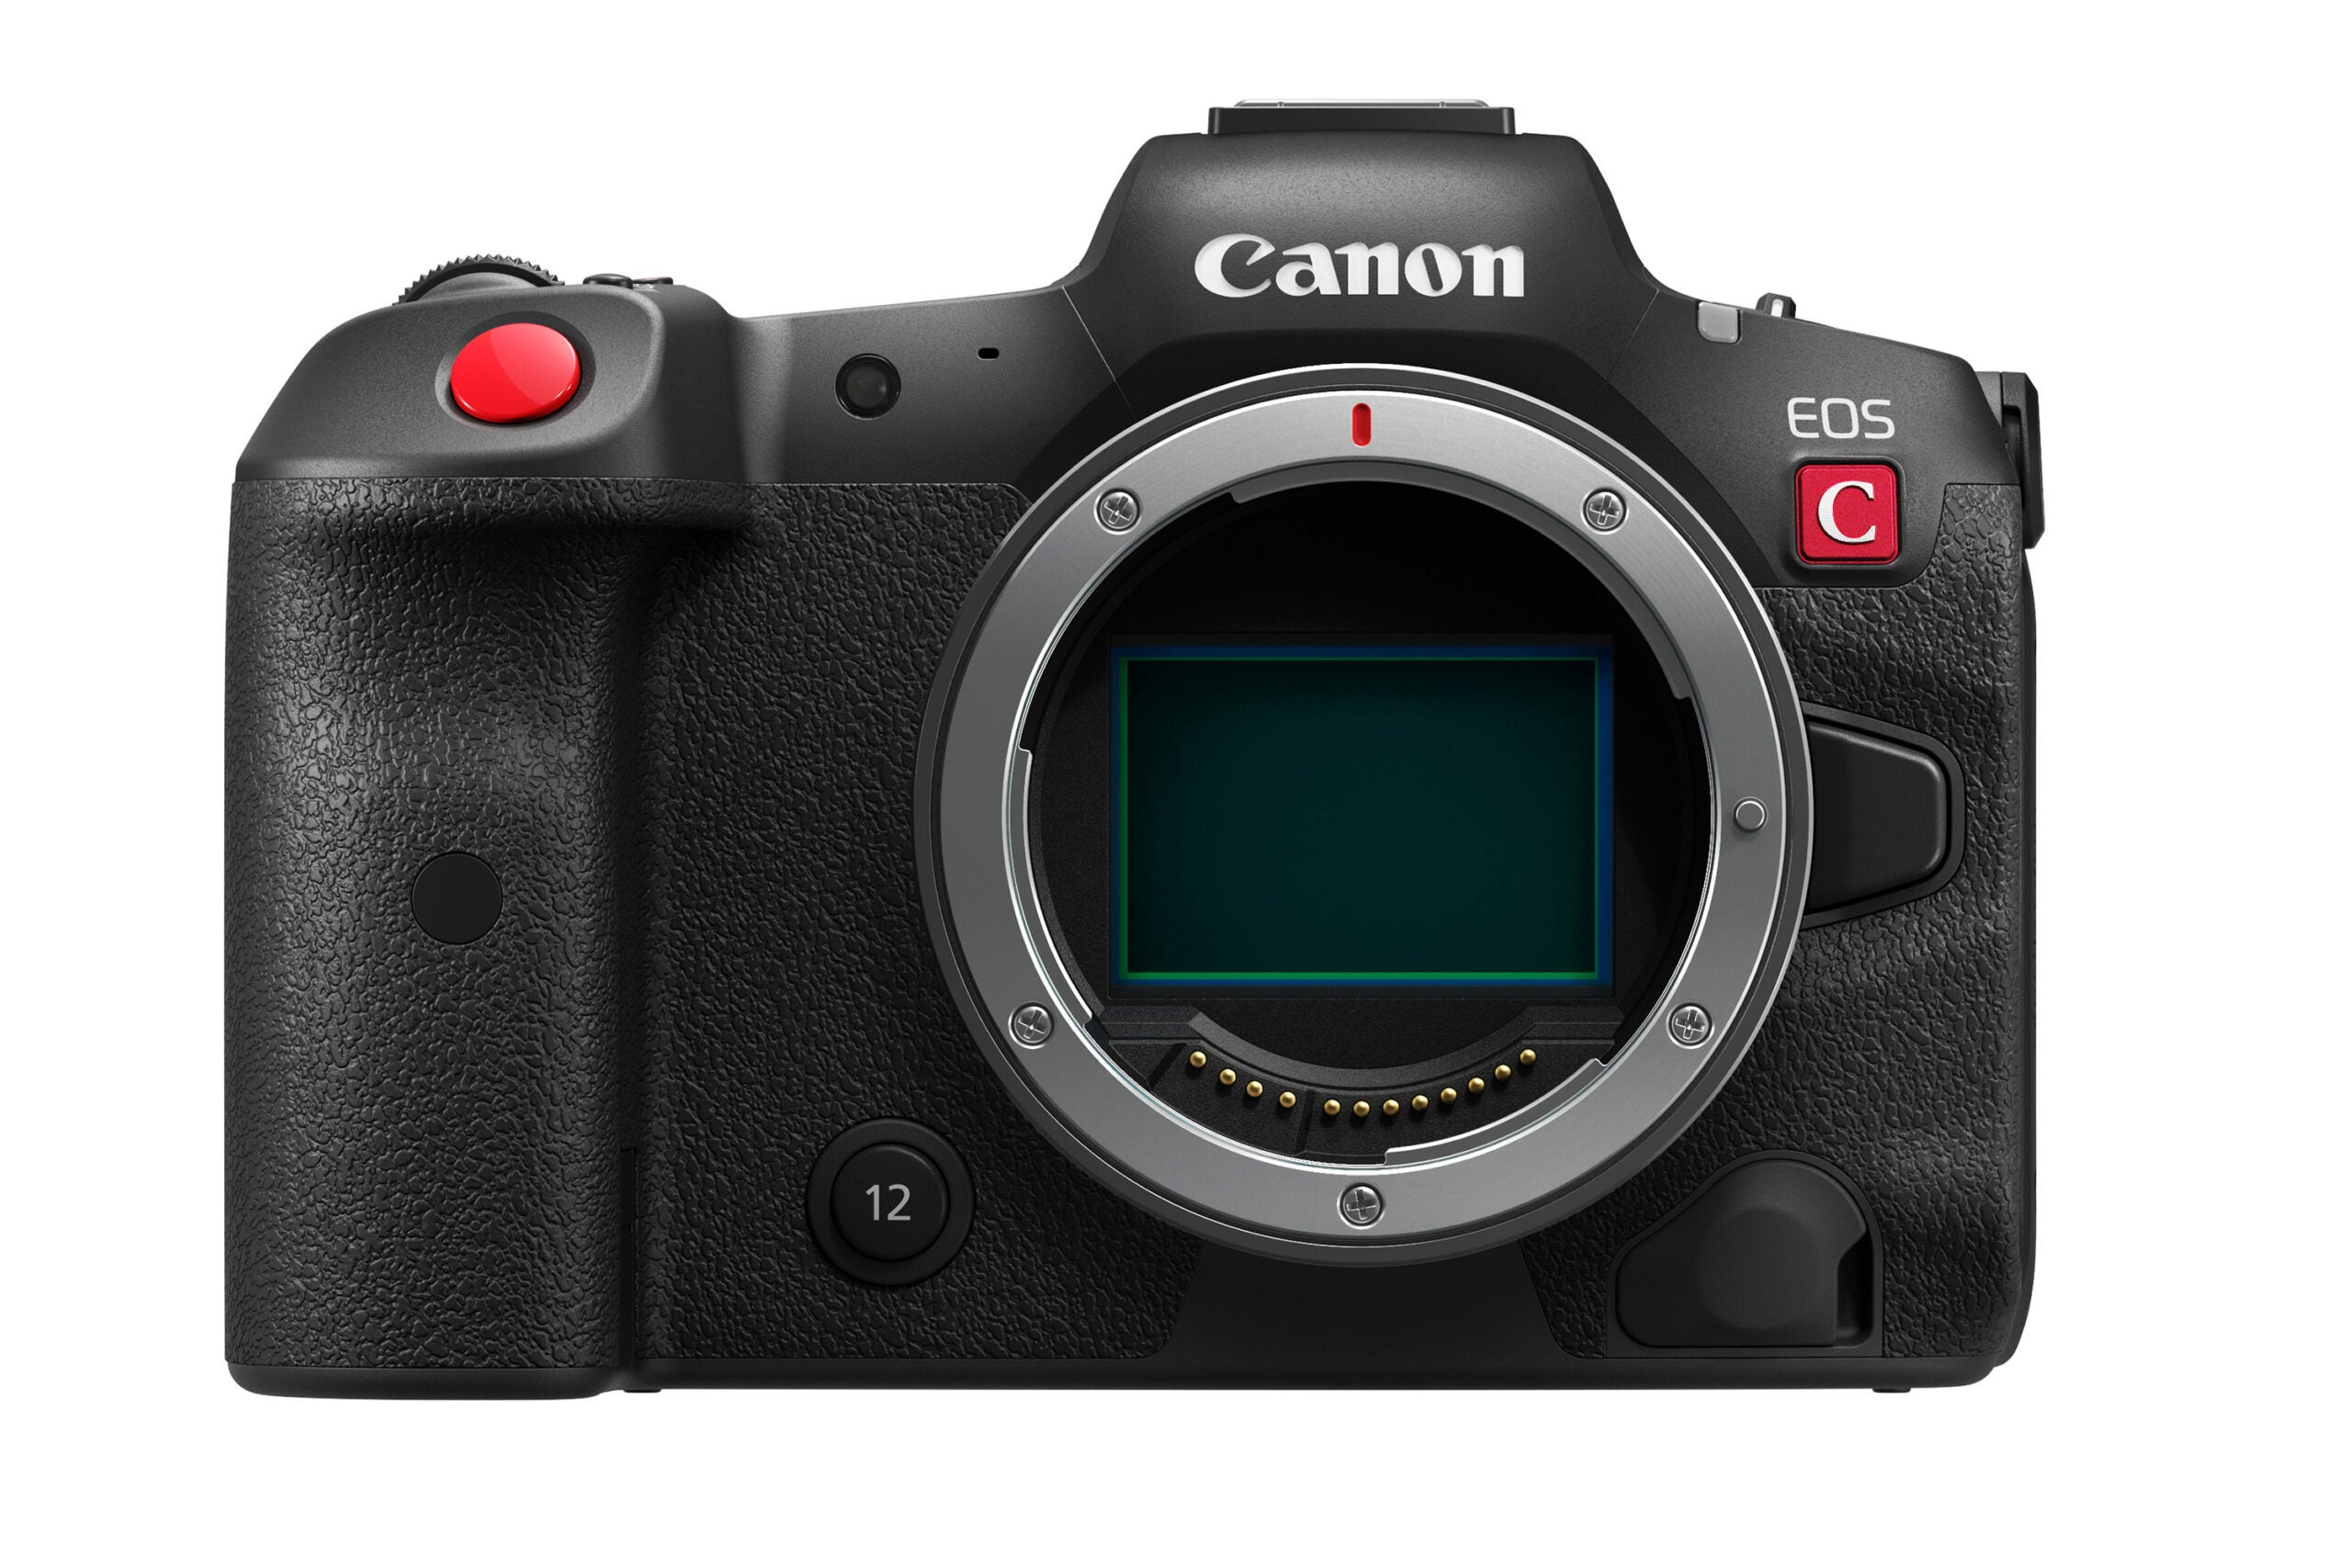 A nova Canon EOS R5 C